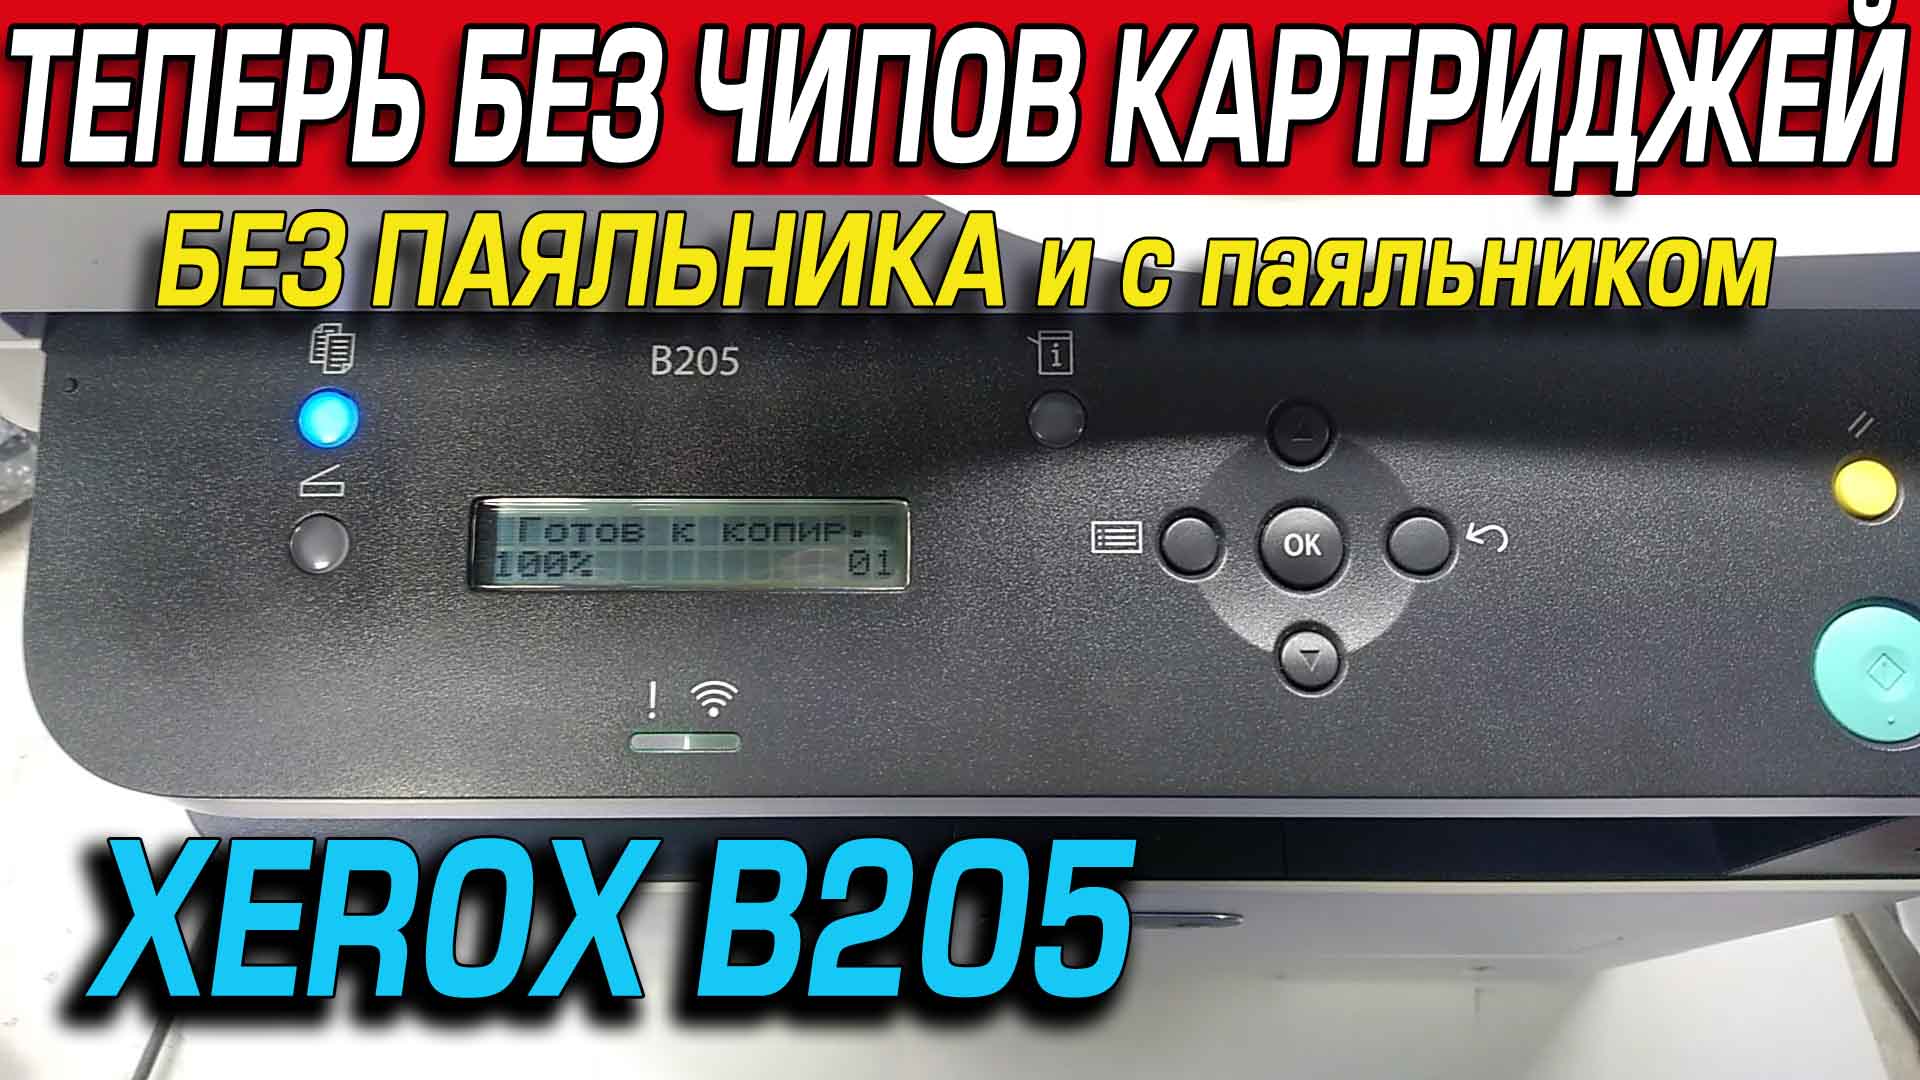 XEROX B205 как отключить чип картриджа, прошивка, понижение версии